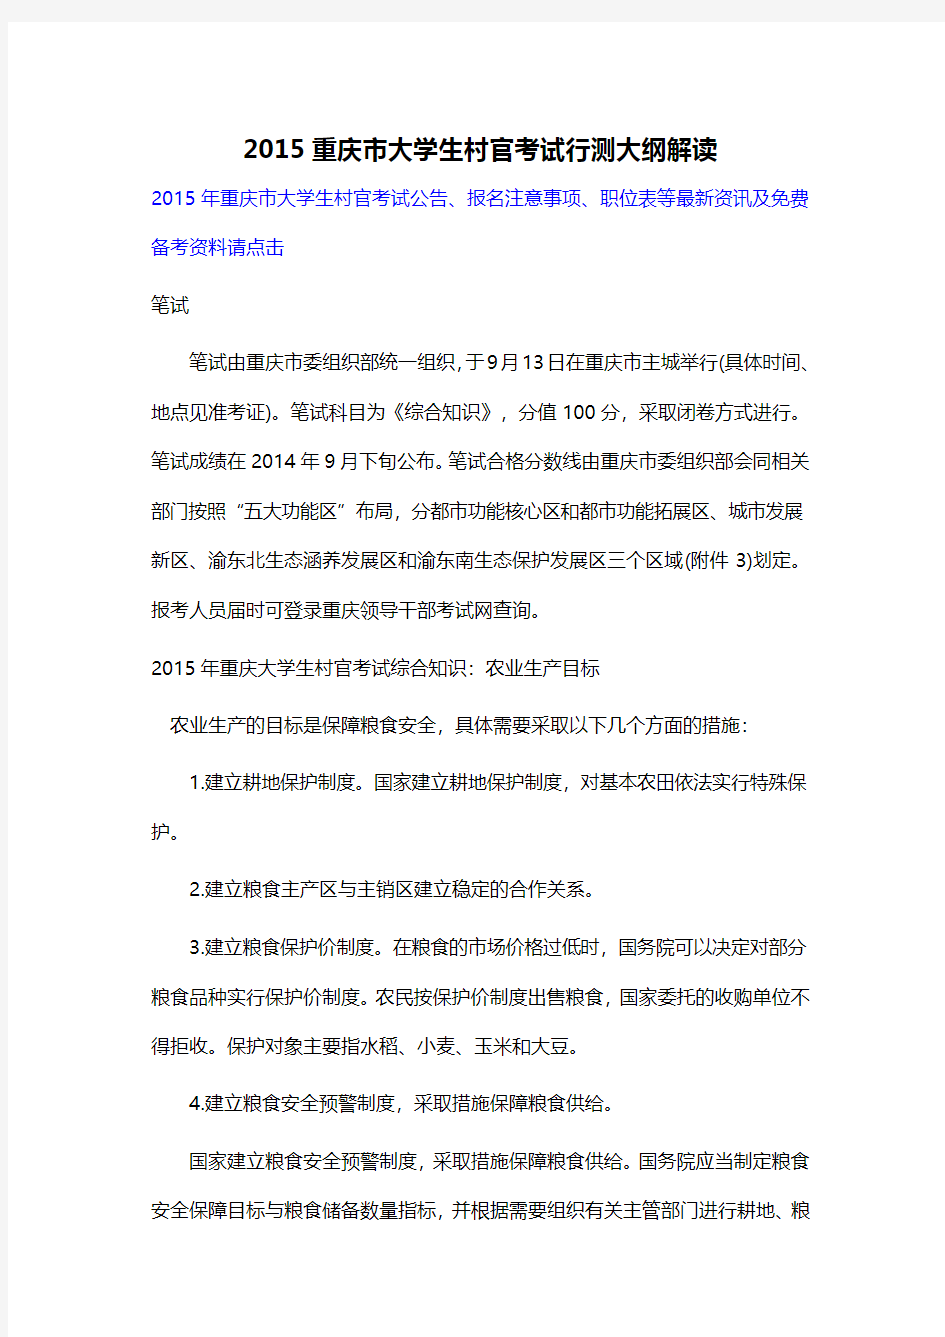 2015重庆市大学生村官考试行测大纲解读